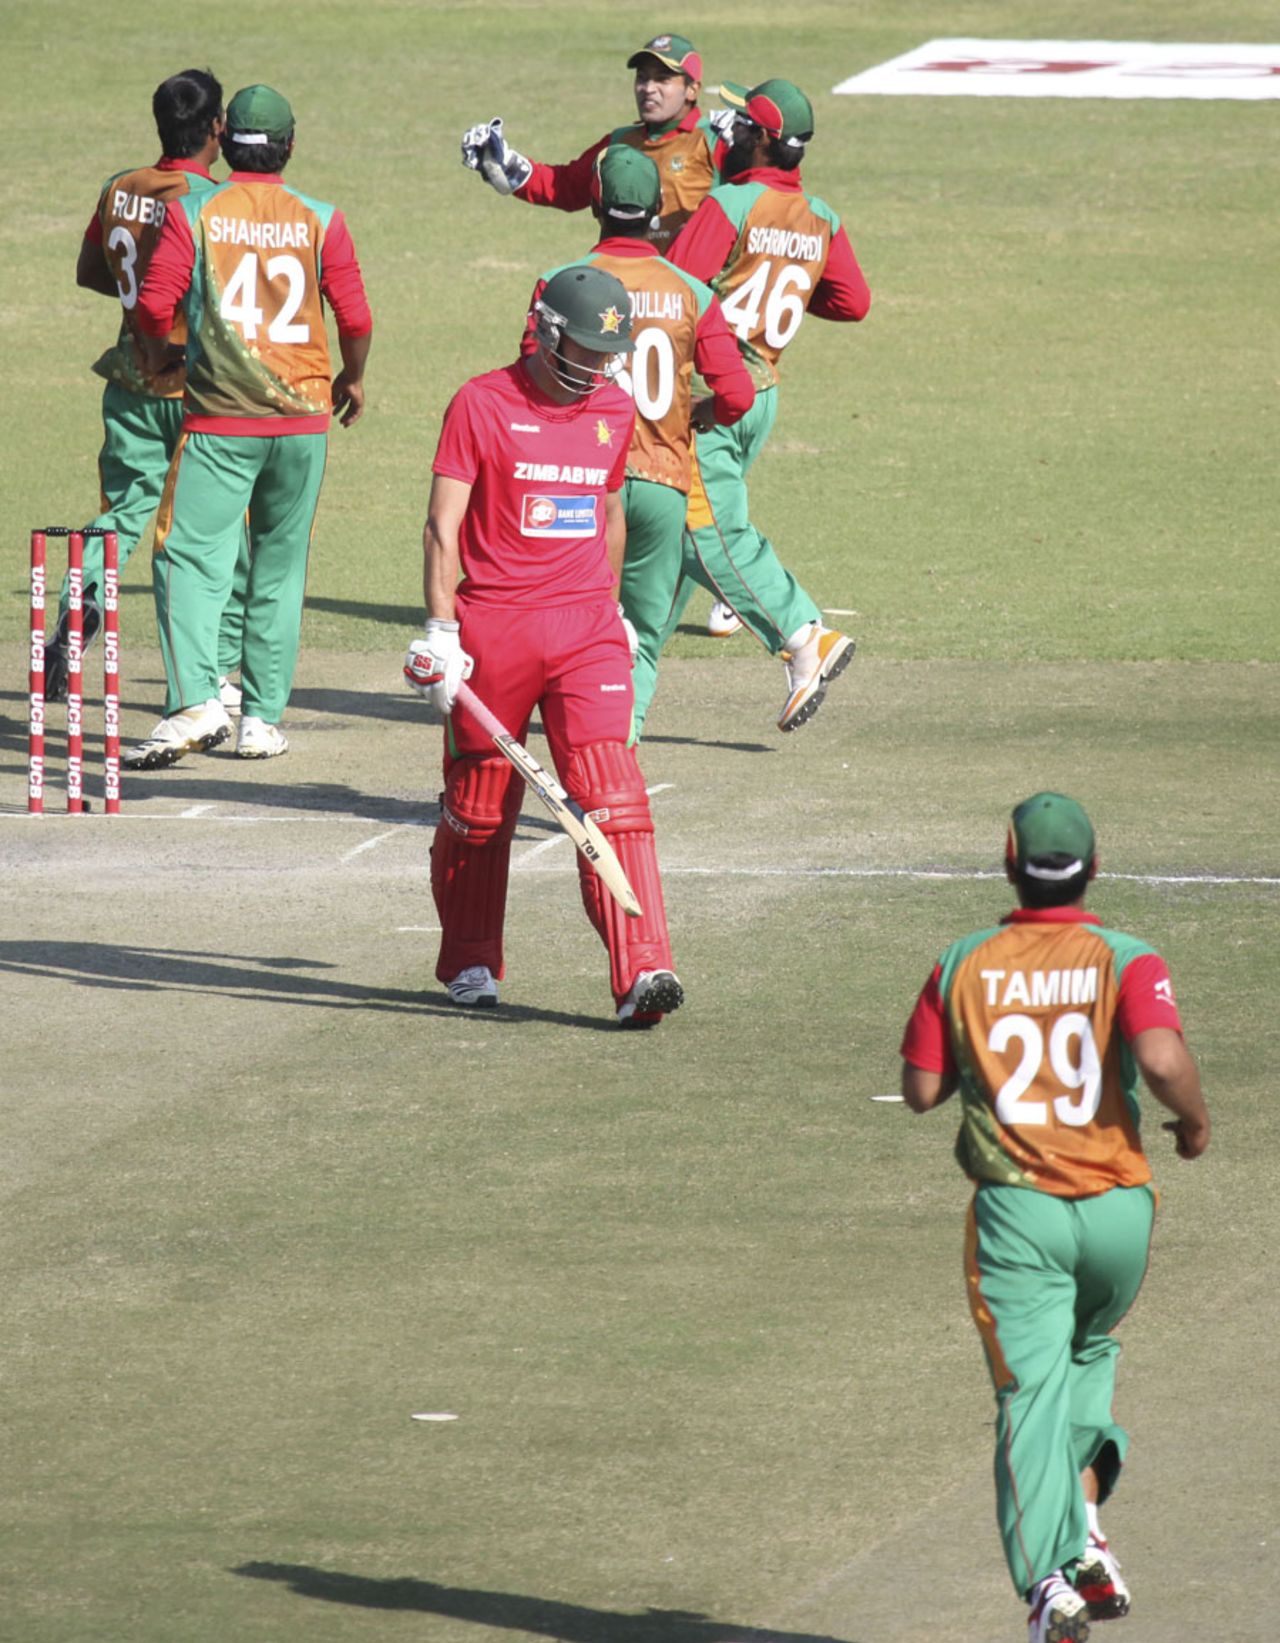 Zimbabwe celebrate after dismissing Craig Ervine first ball, Zimbabwe v Bangladesh, 1st ODI, Harare, 